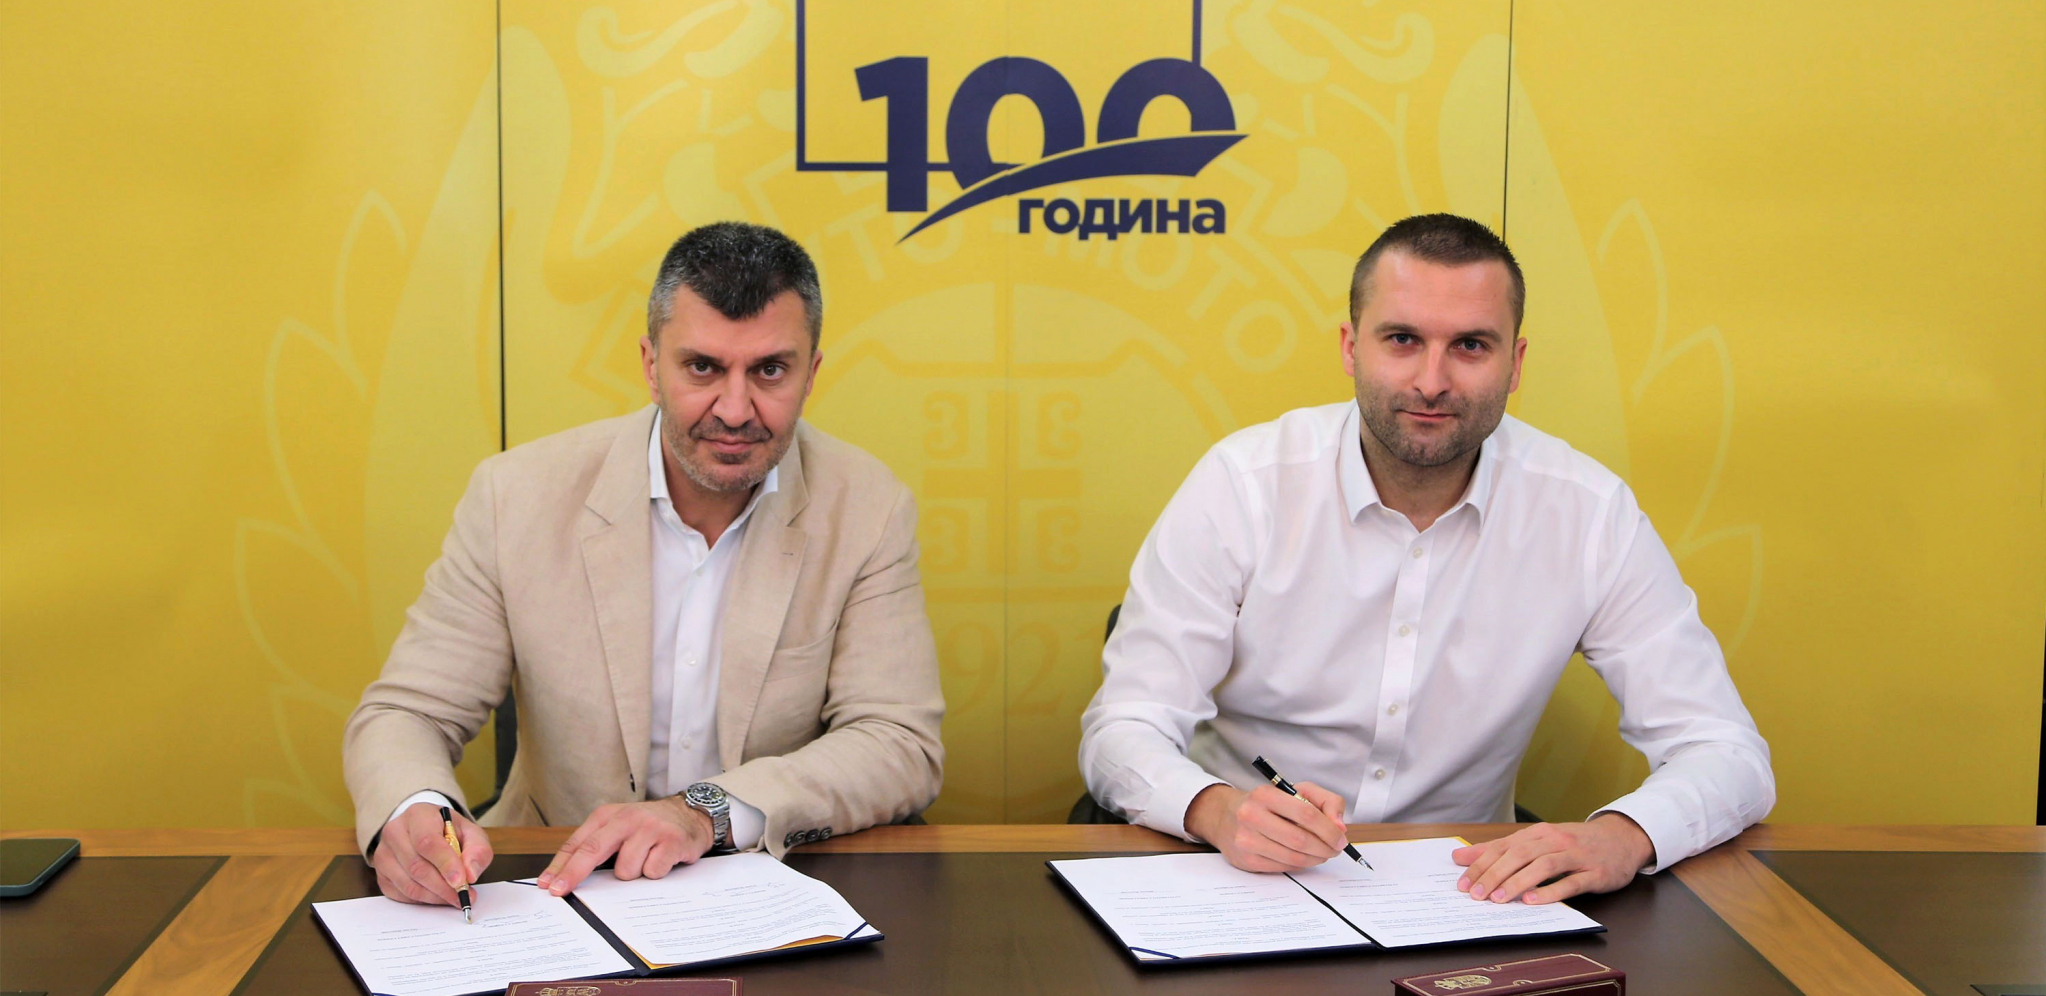 Auto-moto savez Srbije i JP “Pošta Srbije” ozvaničili saradnju